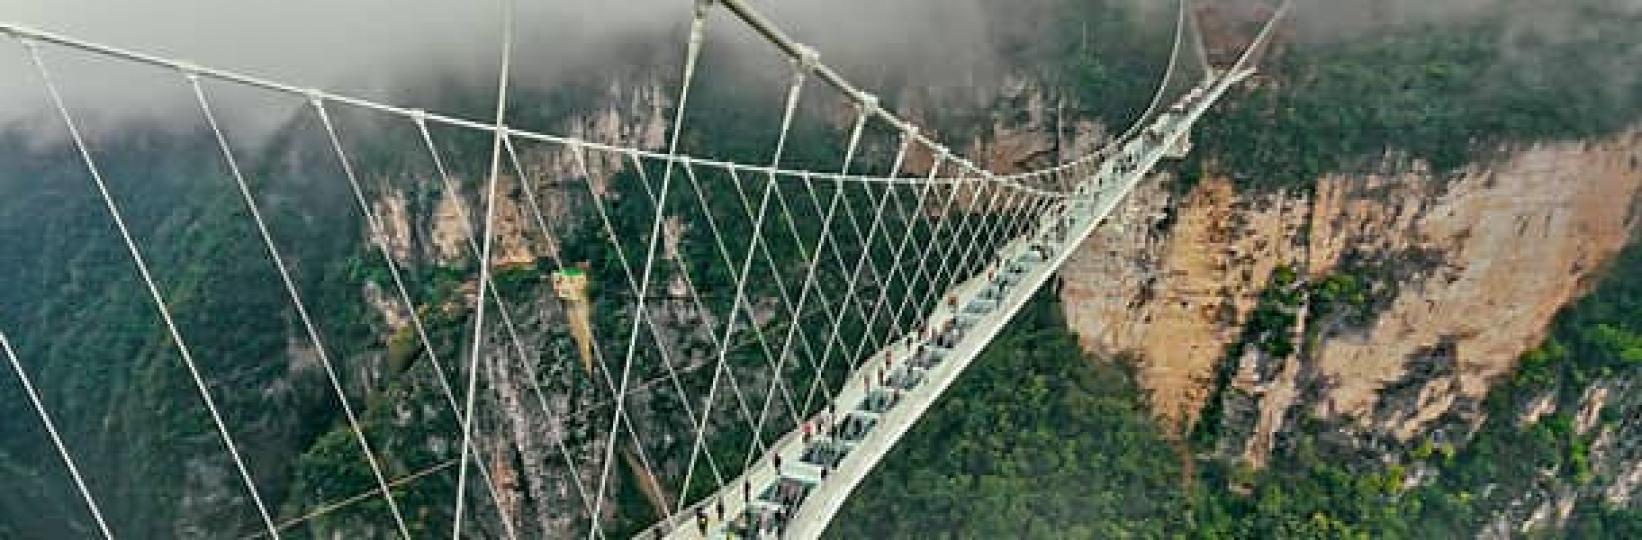 玻璃橋

湖南張家界的玻璃橋是2016 年由以色列工程師設計，建於張家界國林森林公園的高山肖壁上，吸引很多遊客觀光。...